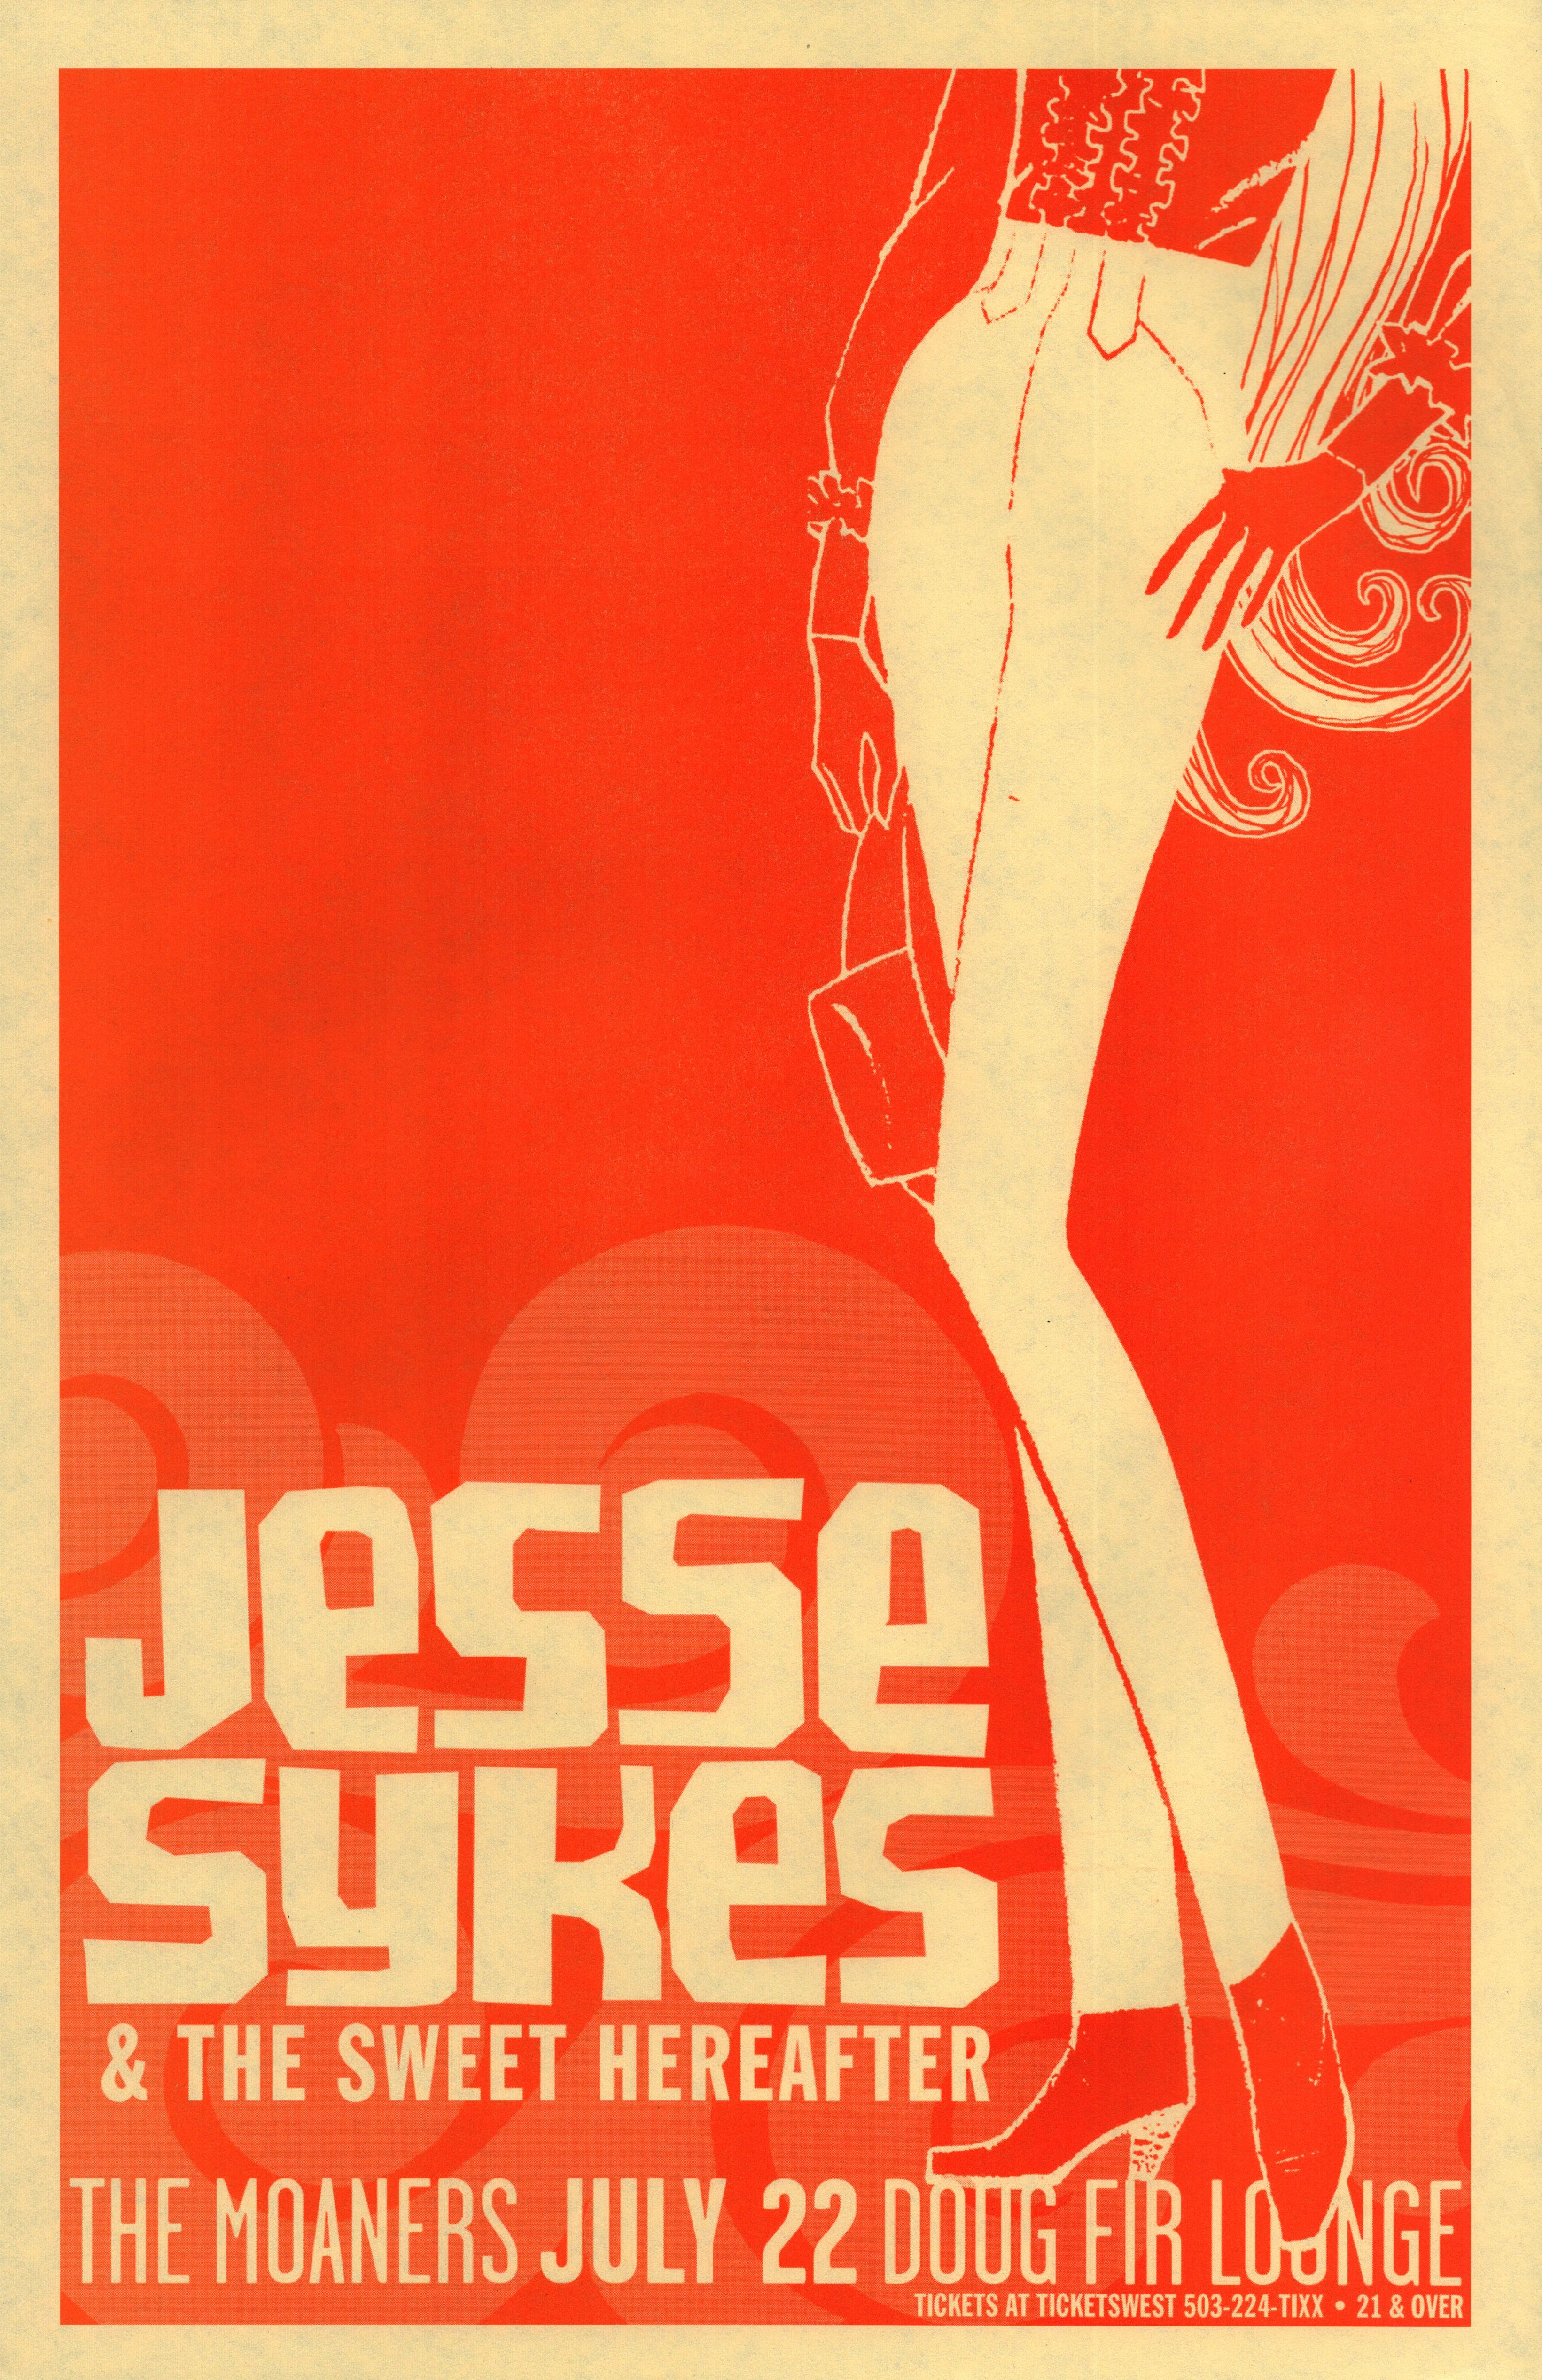 MXP-142.14 Jesse Sykes & The Sweet Hereafter 2007 Doug Fir  Jul 22 Concert Poster